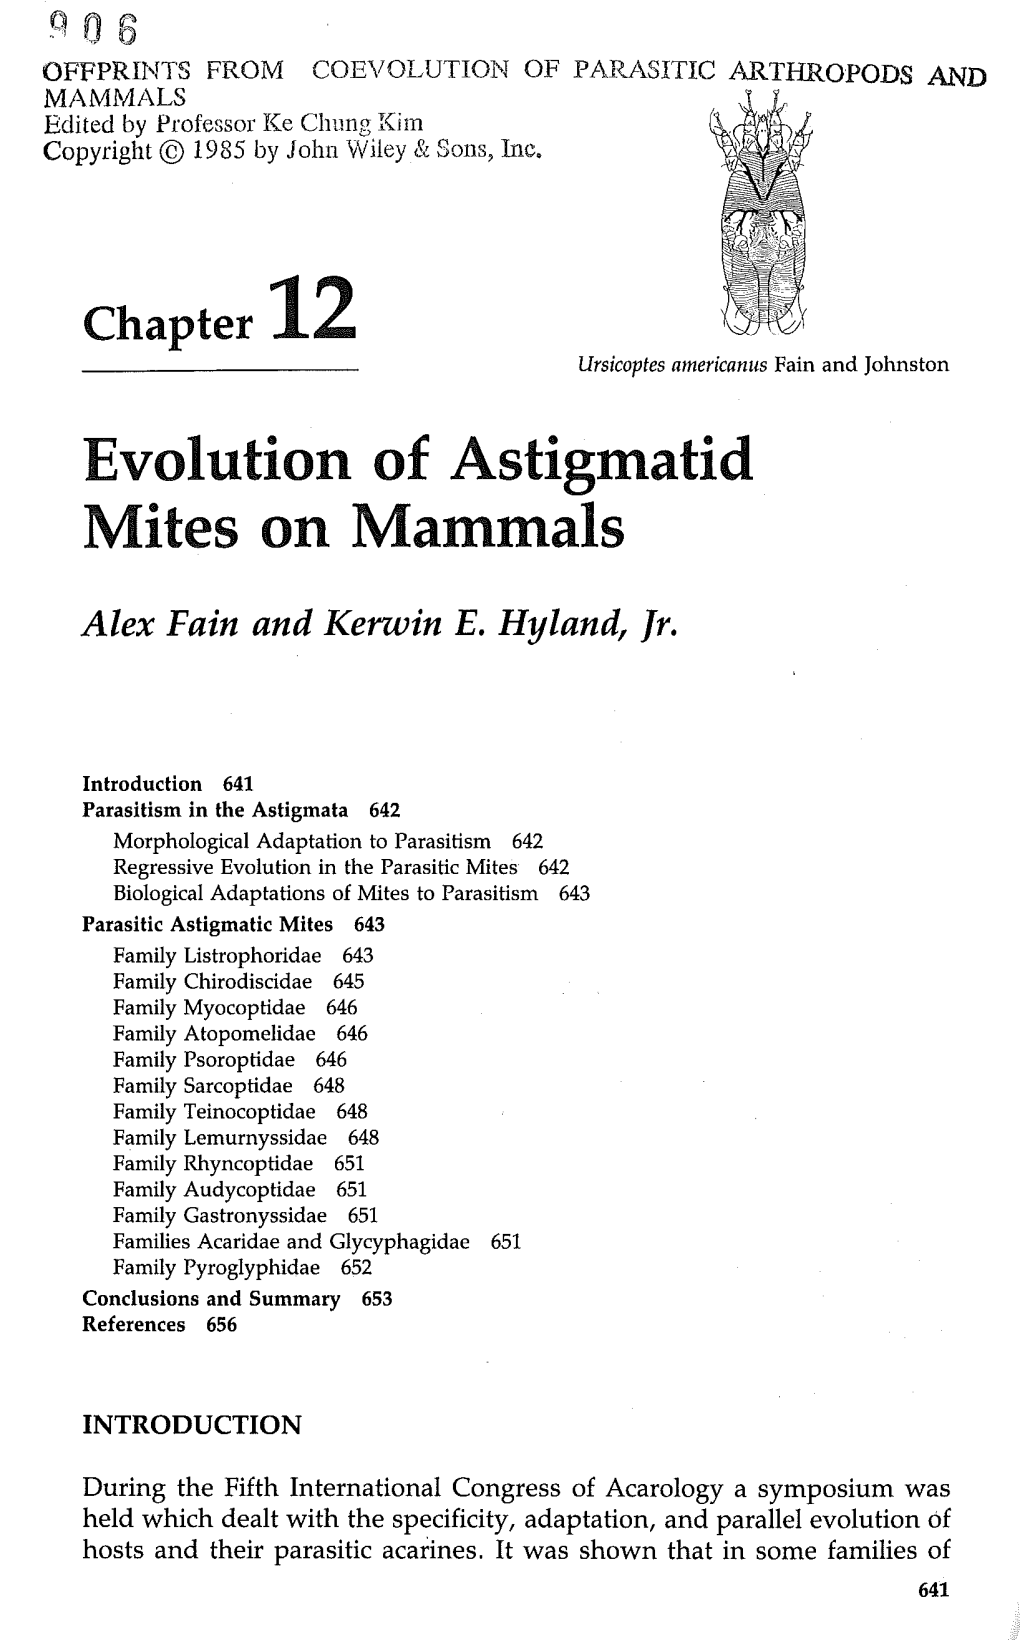 Evolution of Astigmatid Mites on Mammals